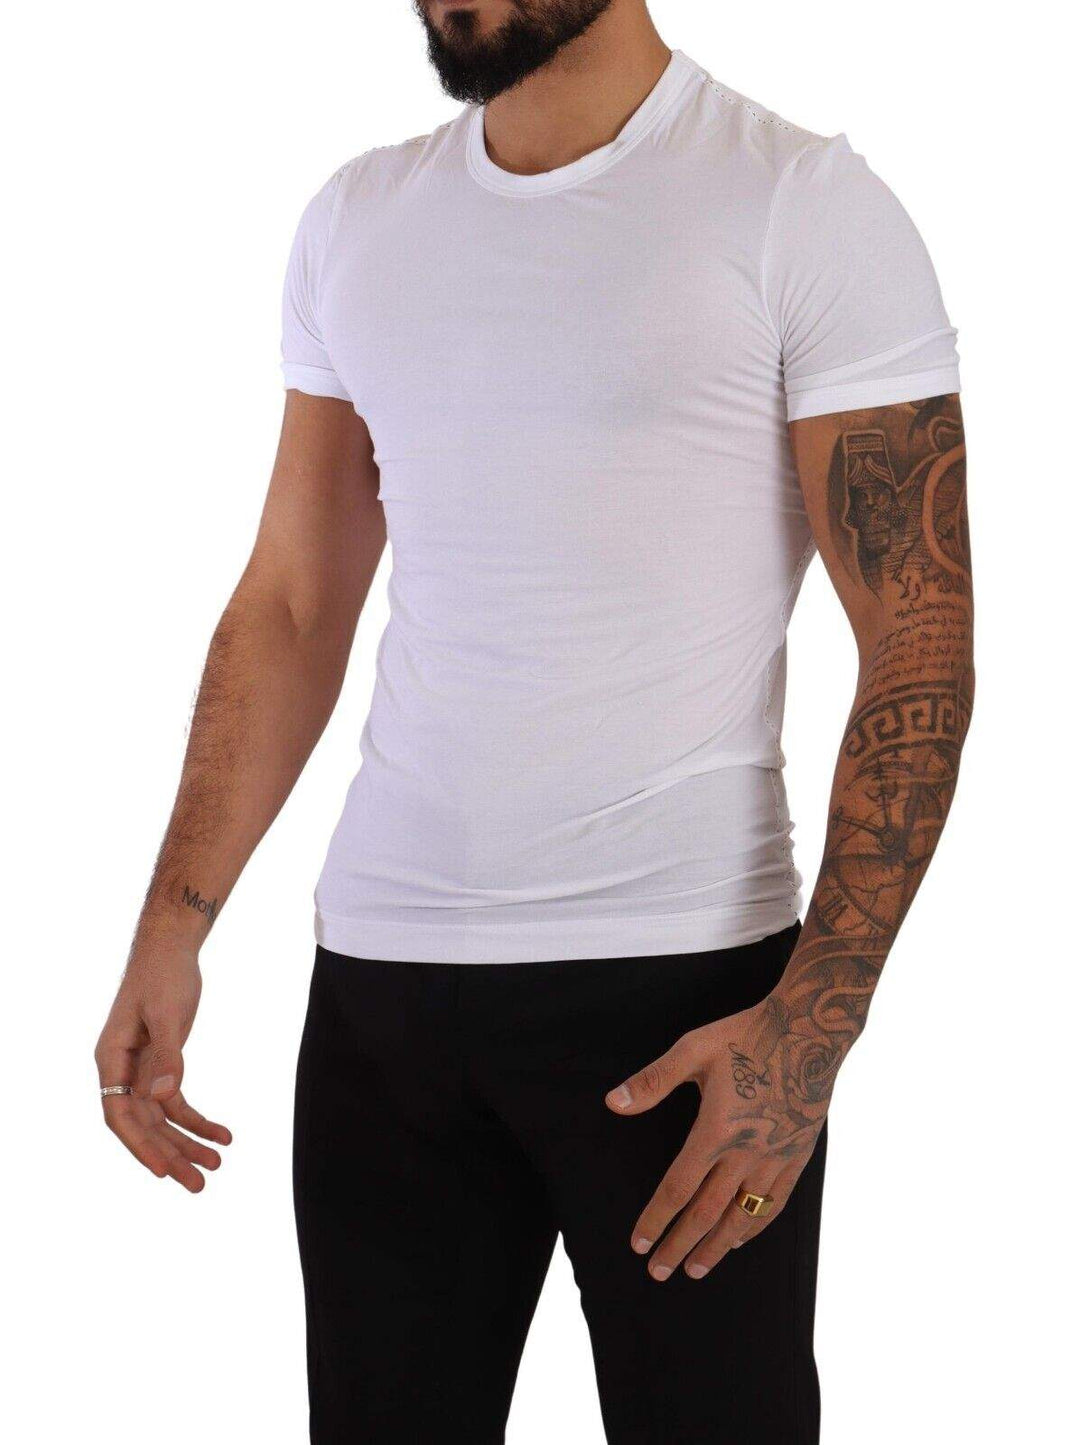 Dolce & Gabbana White Round Neck Cotton Stretch T-shirt Underwear #men, Dolce & Gabbana, feed-1, IT3 | XS, T-Shirts - Men - Clothing, Underwear - Men - Clothing, White at SEYMAYKA